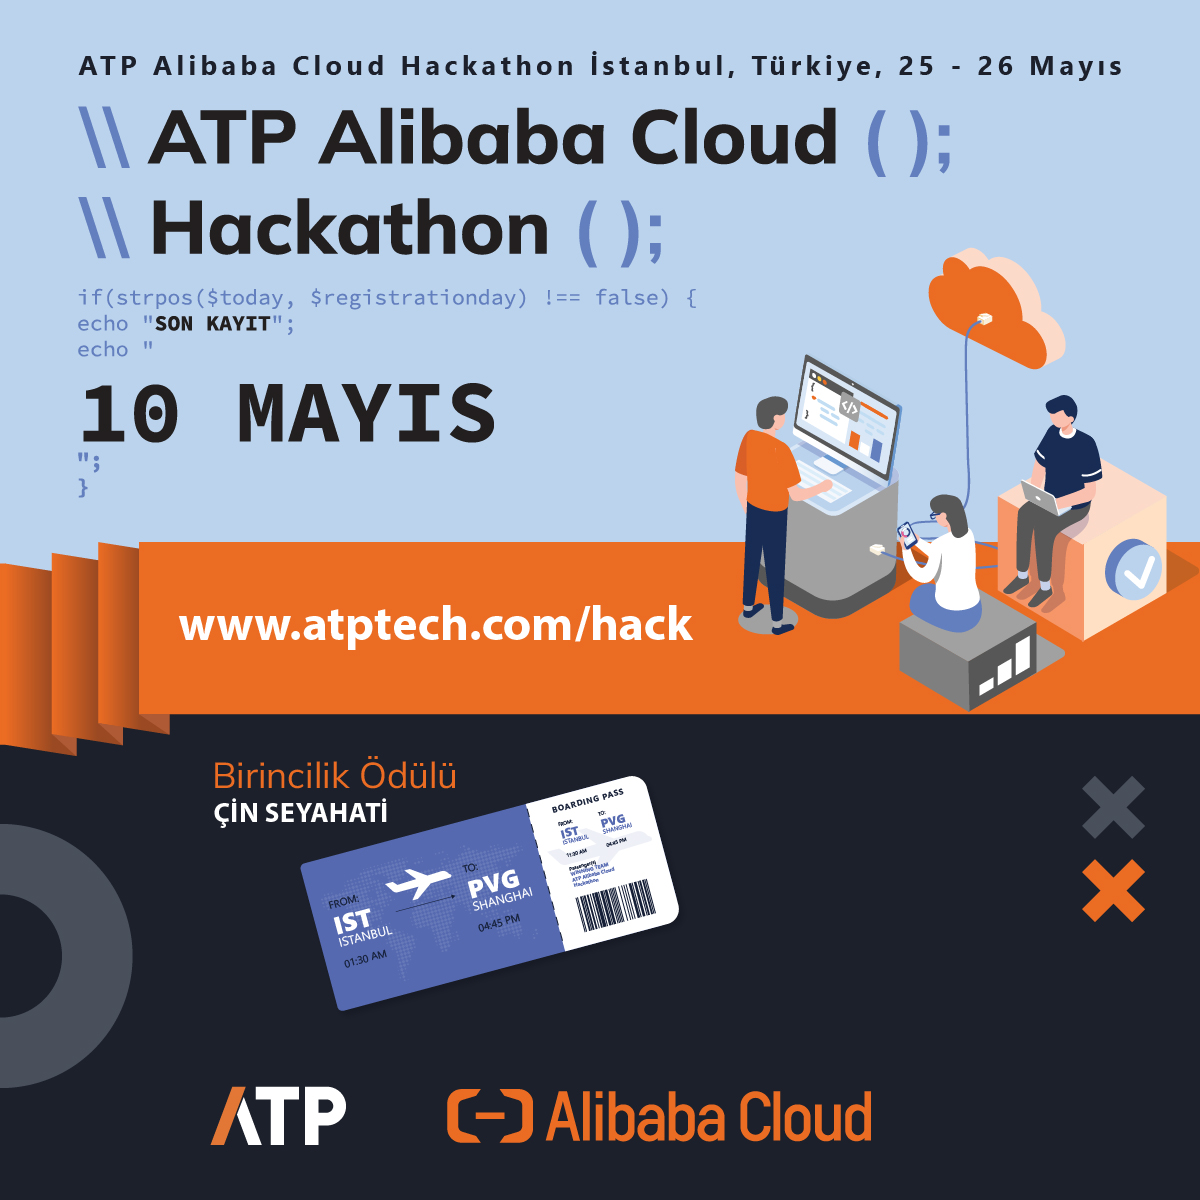 Alibaba Cloud iş birliğiyle düzenlenecek olan ilk hackathonumuz için kayıtlar başladı! Ekip kur, başvur ve Çin'de teknoloji dolu bir yolculuk kazanma fırsatını yakala! Detaylar ve kayıt için web sitemizi ziyaret et. Bu benzersiz deneyimi kaçırma!

#atp #atatp #alibaba #hackathon